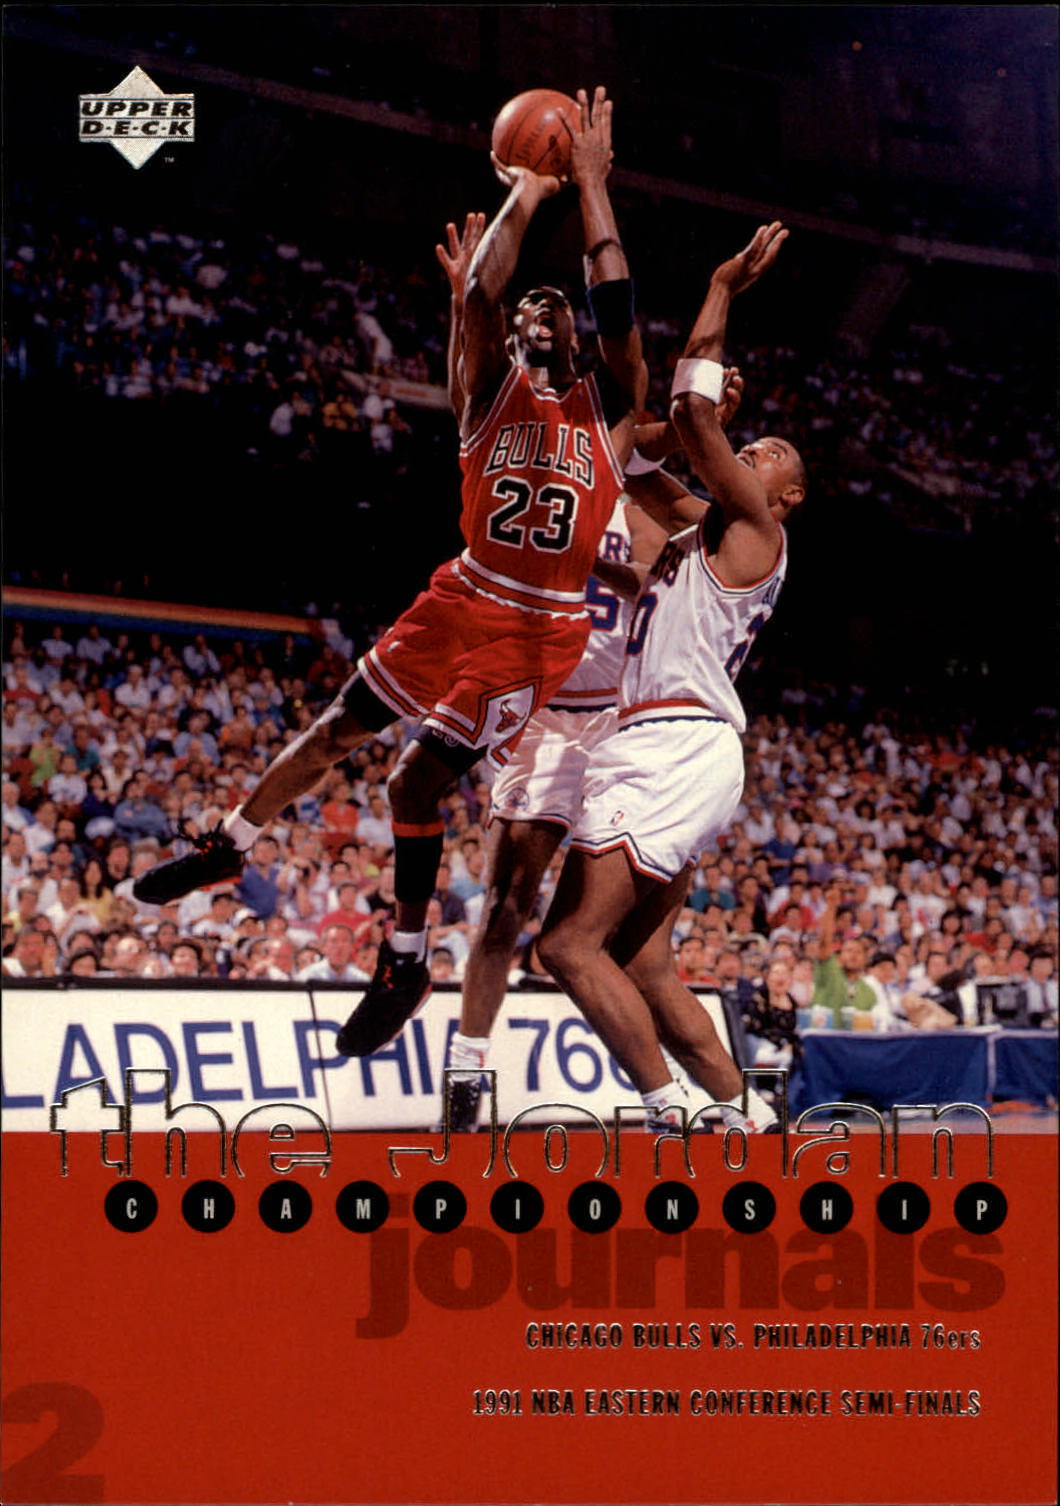 1997 Upper Deck Michael Jordan Championship Journals #2 Michael Jordan/Journal 1991, versus Philadelphia